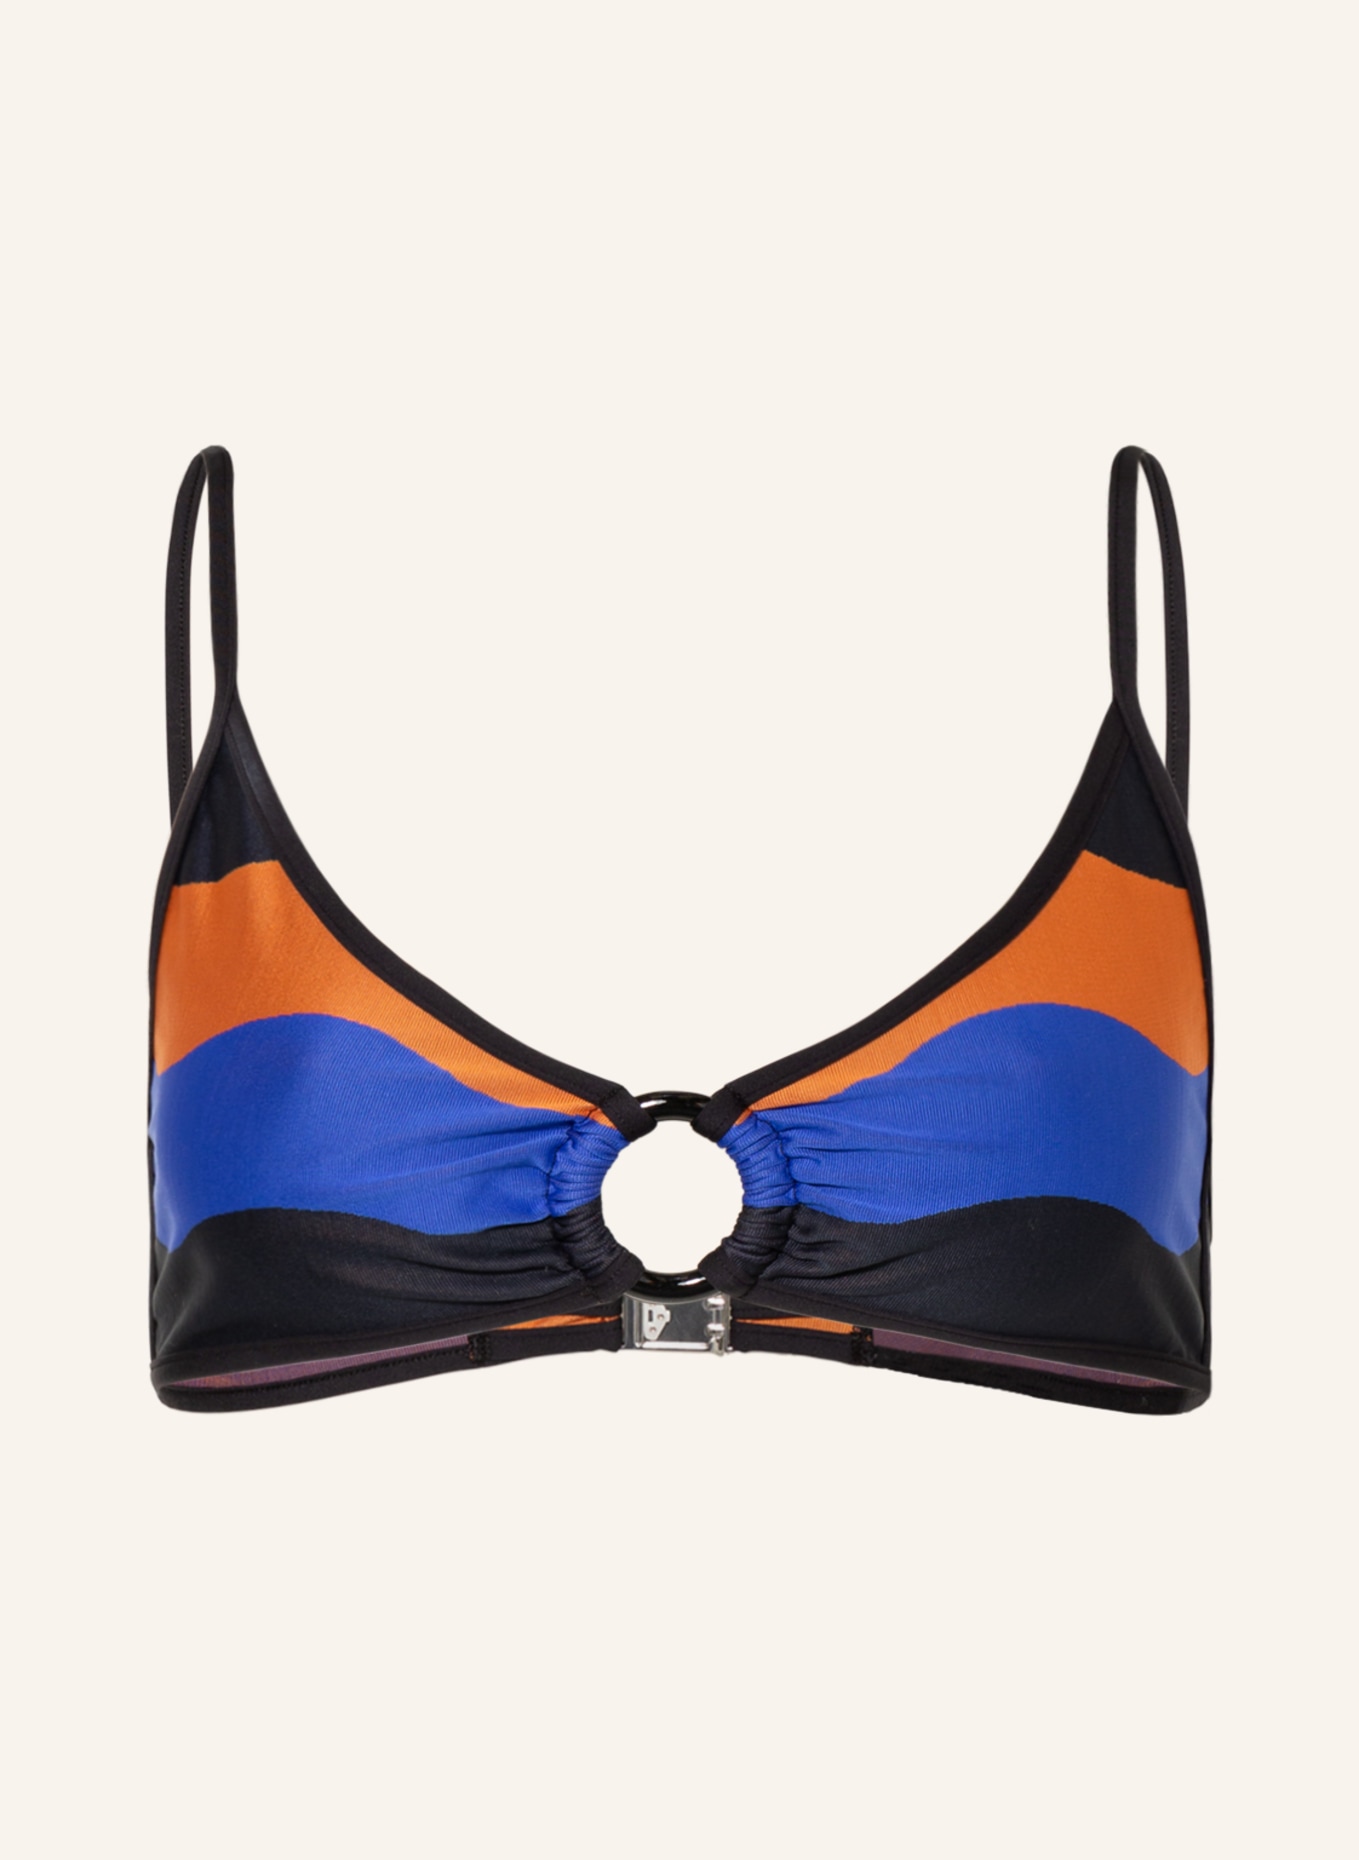 ANDRES SARDA Bralette bikini top DENIS, Color: BLACK/ BLUE/ PURPLE (Image 1)